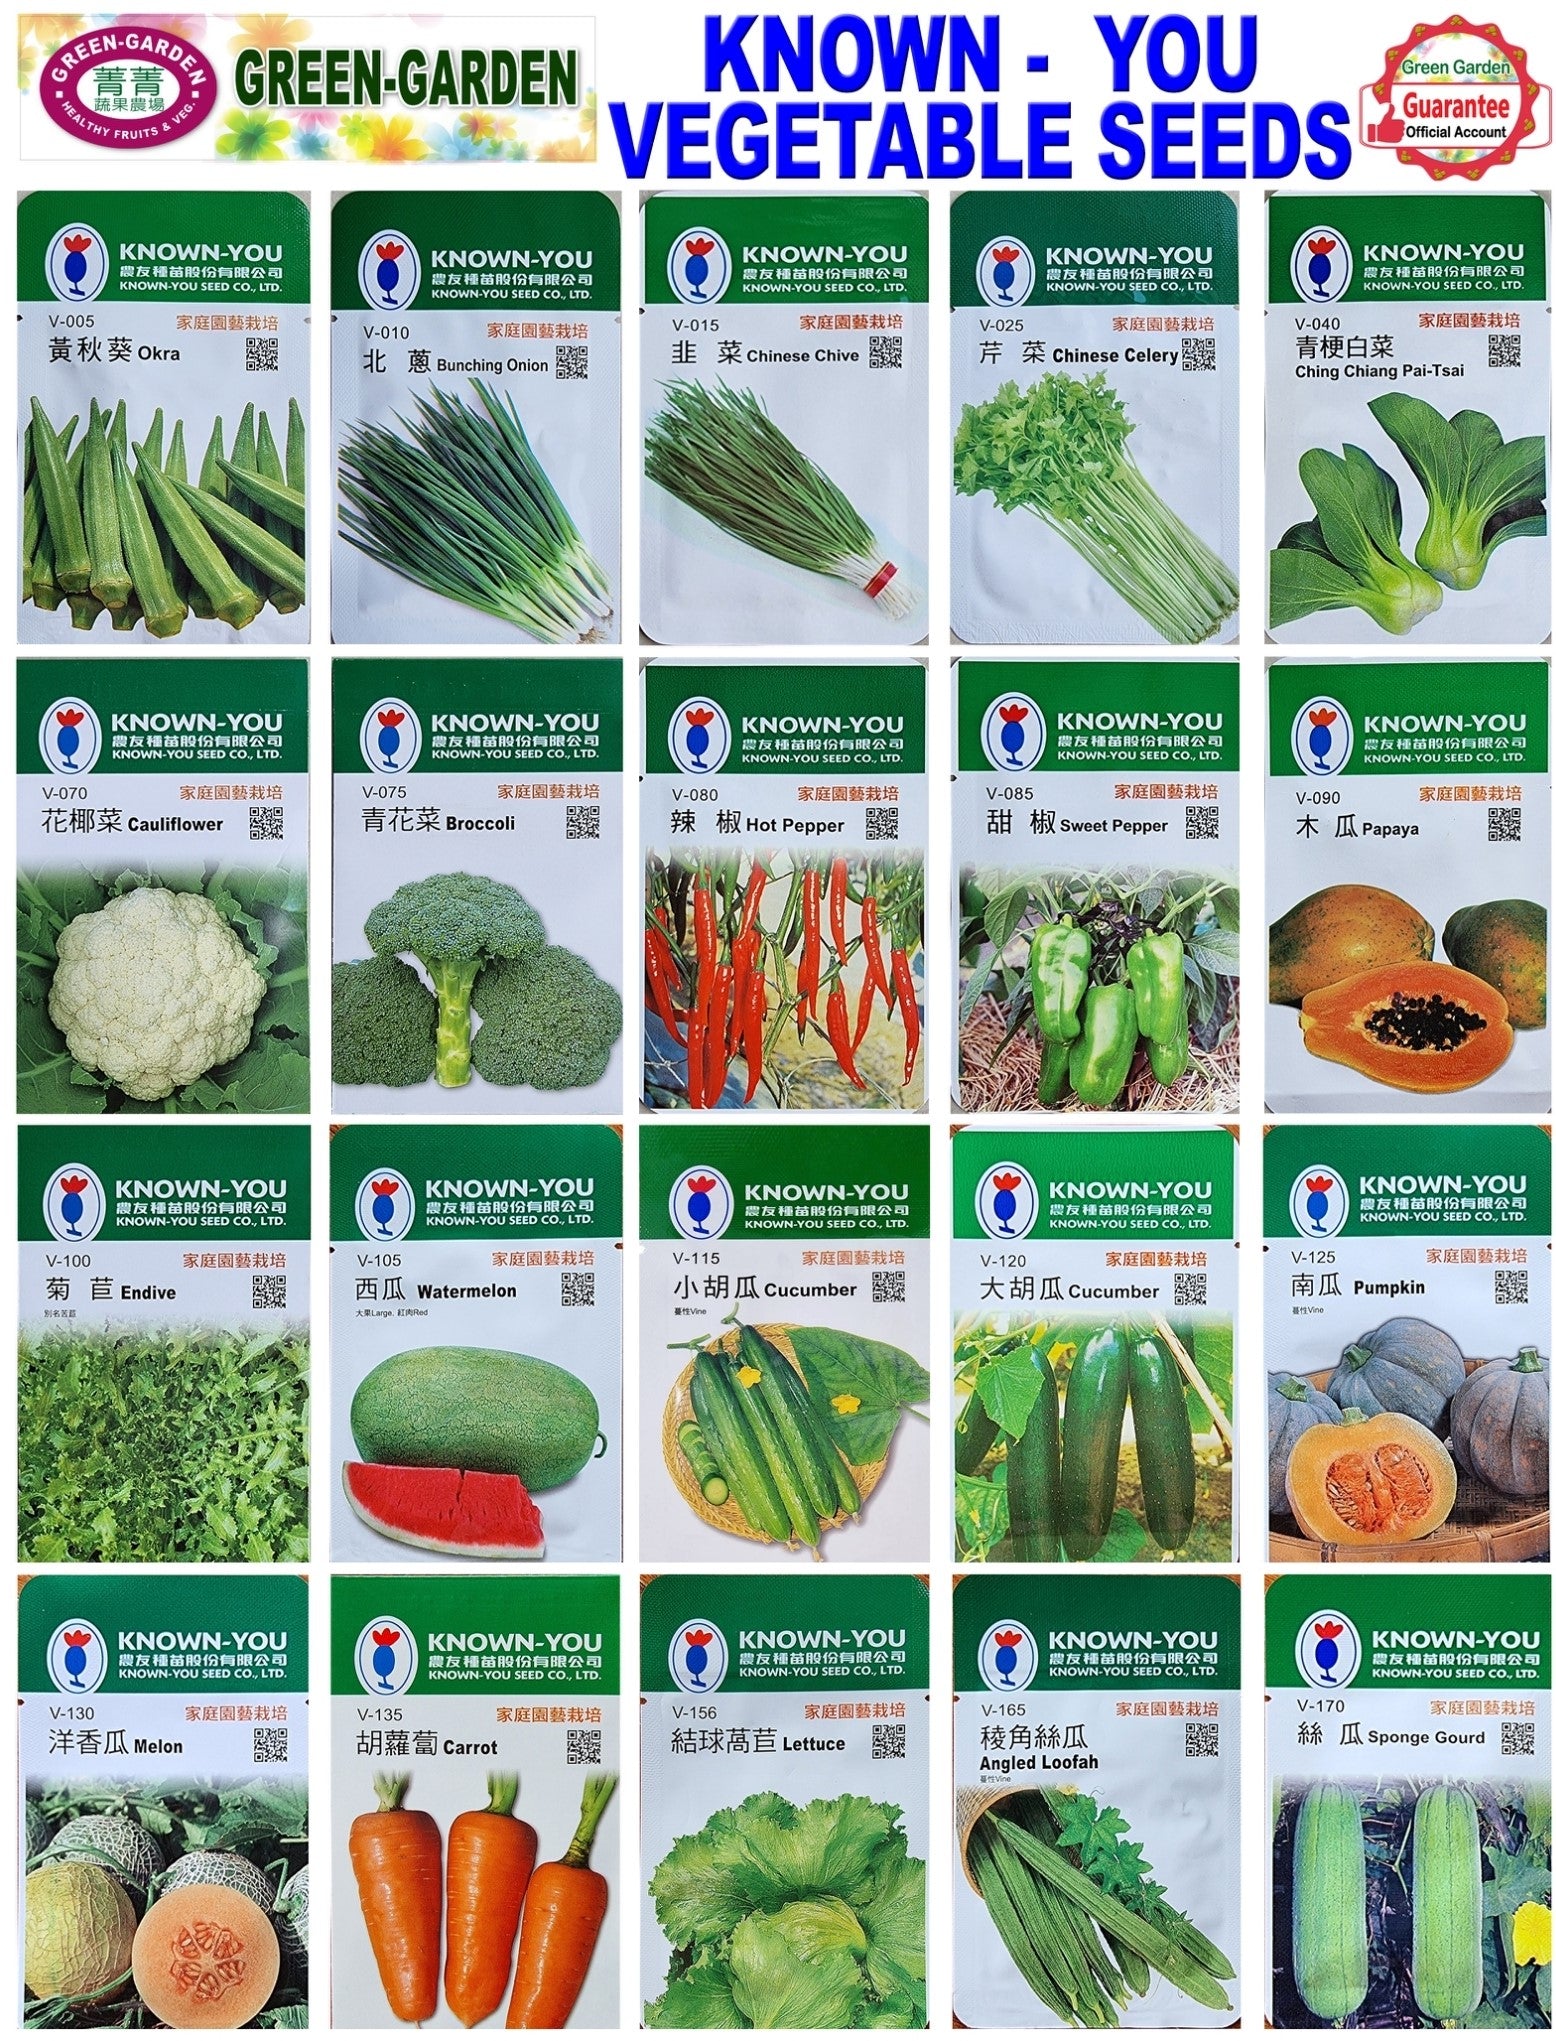 Known You Vegetable Seeds (V-156 Lettuce)